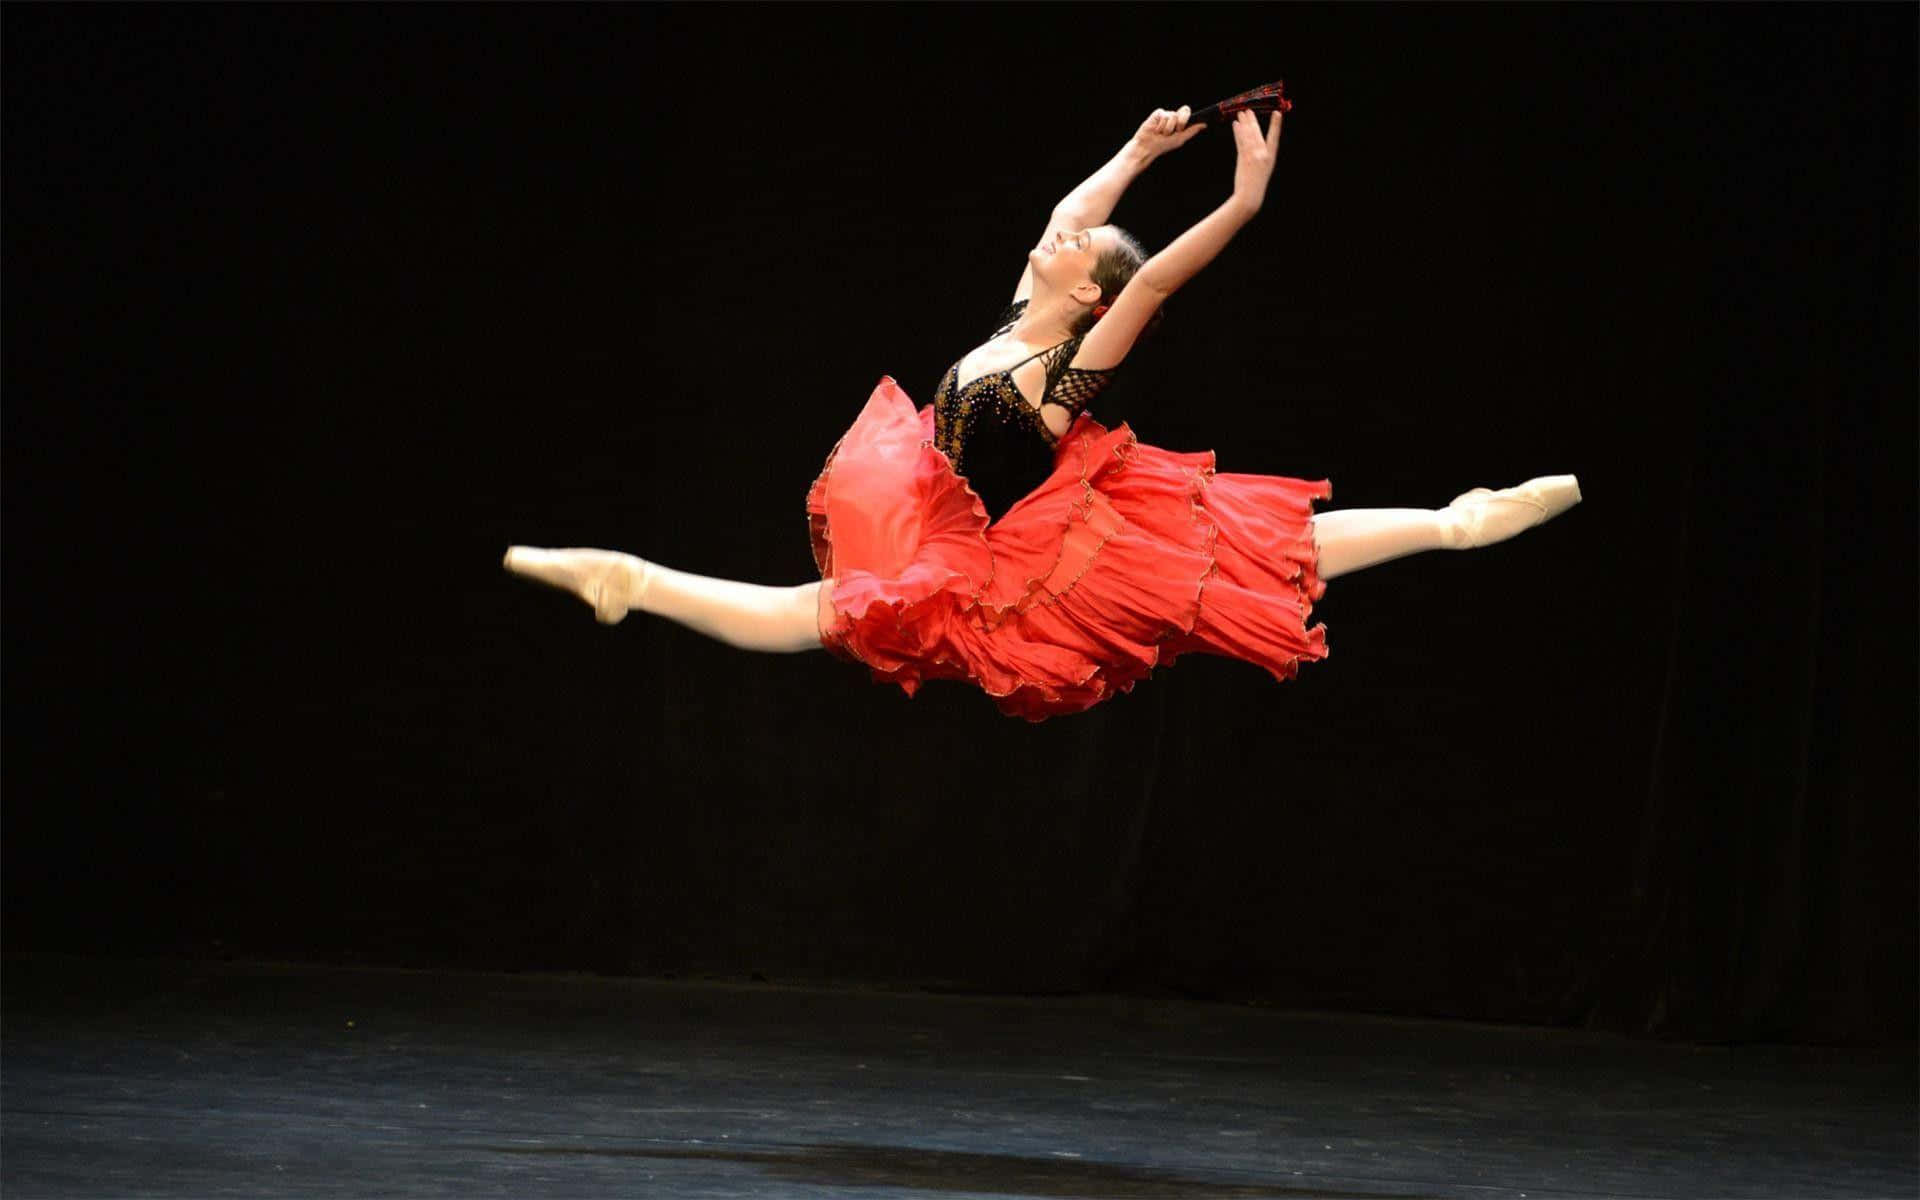 Professional Ballet Dancer in Motion